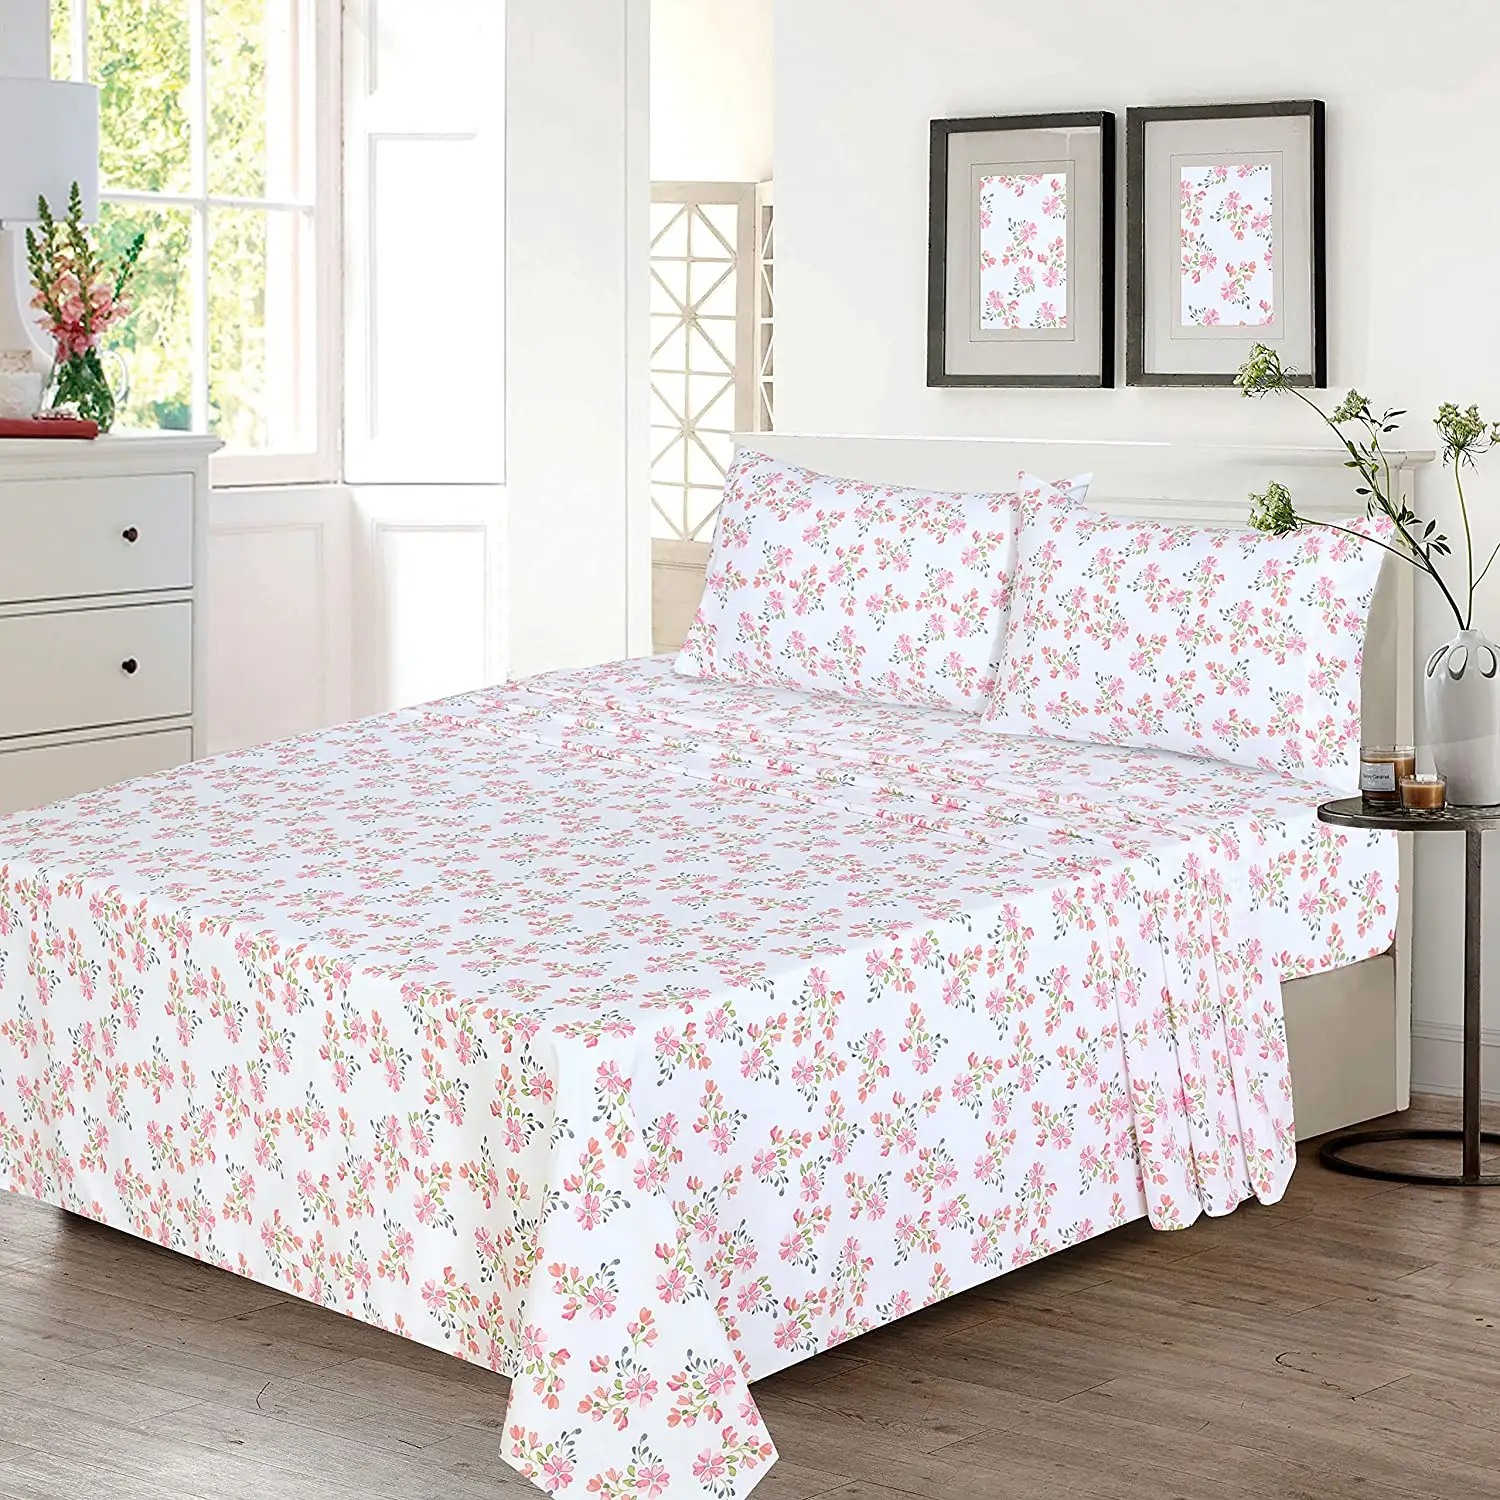 Digital Print Bed Sheets Red & Green Floral Design Full Size Sheet Sets Soft Breathable Bedding Set 4 Pcs Bed set